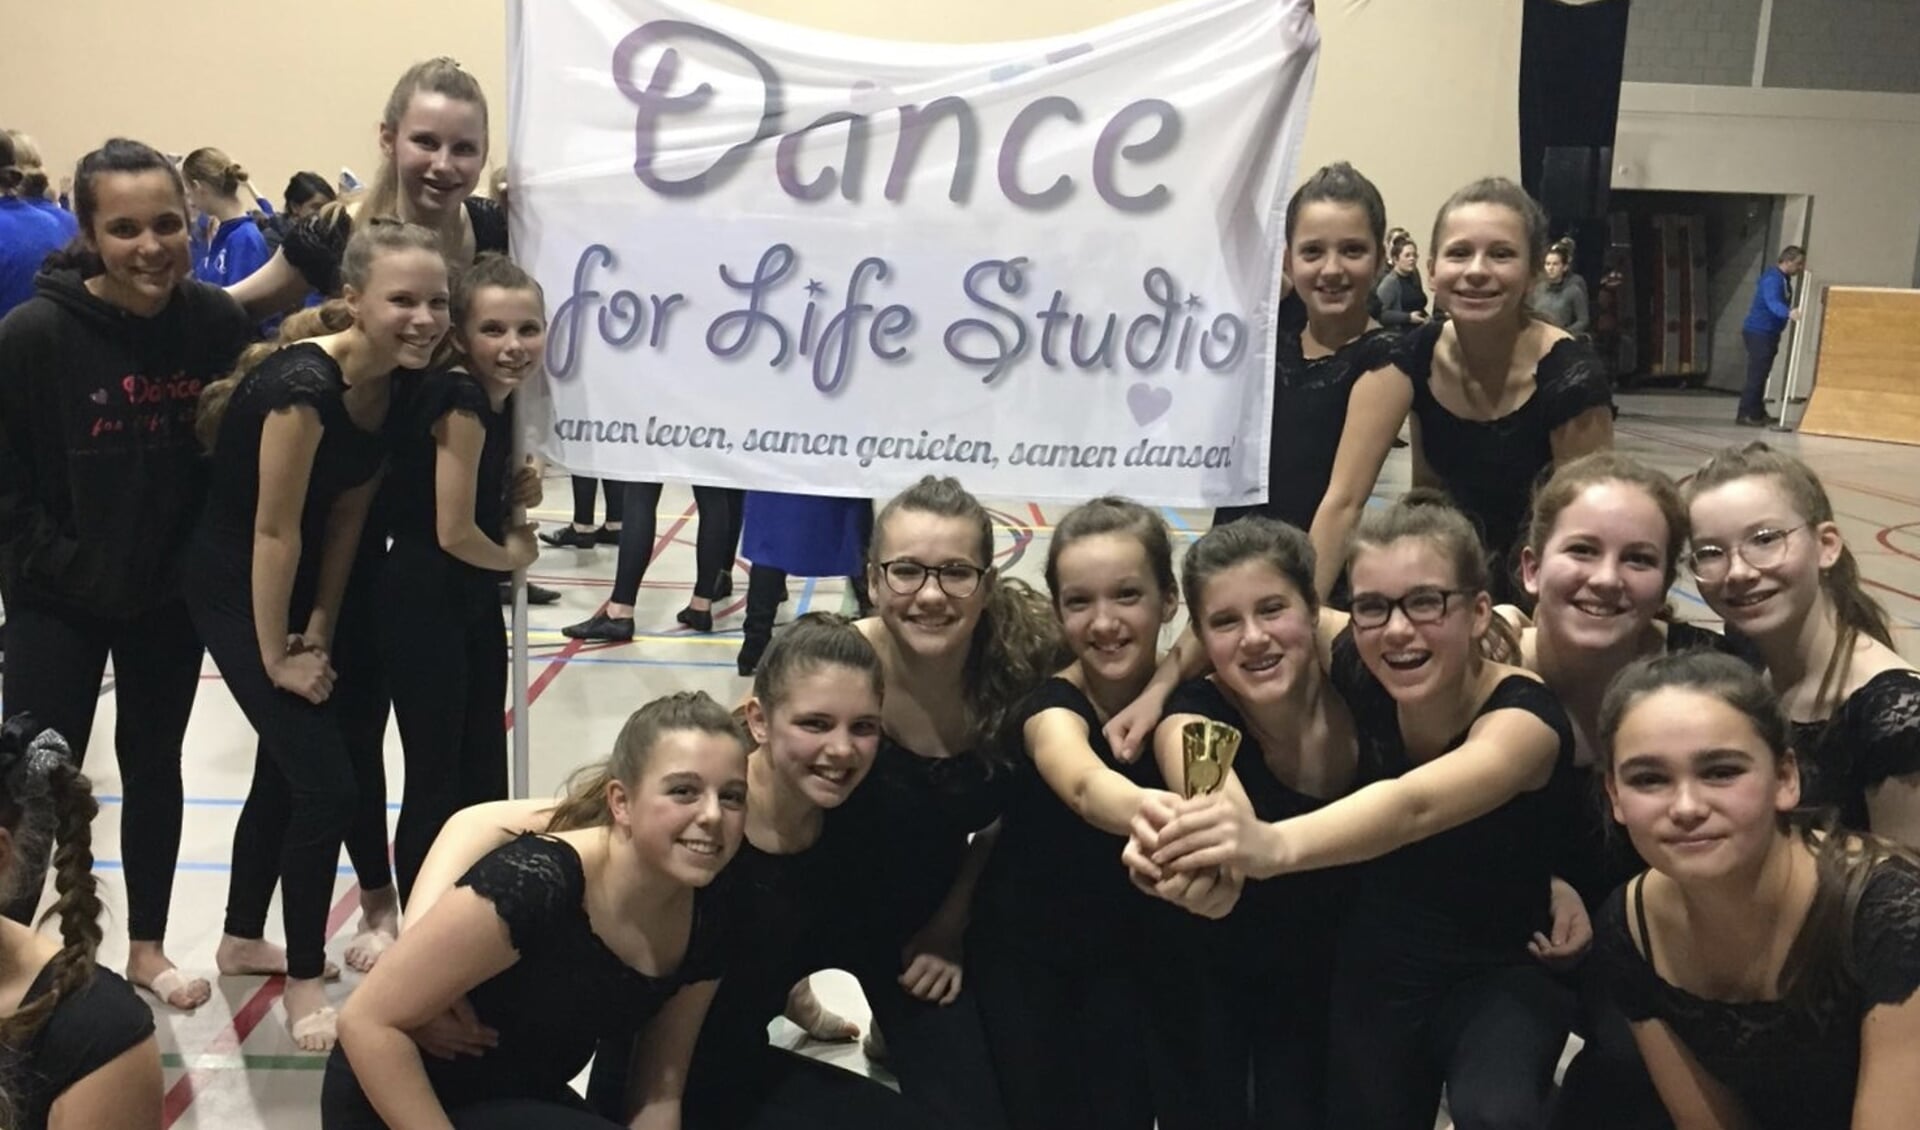 De meiden van Dance for Life Studio in betere tijden, tijdens een wedstrijd die wél door kon gaan